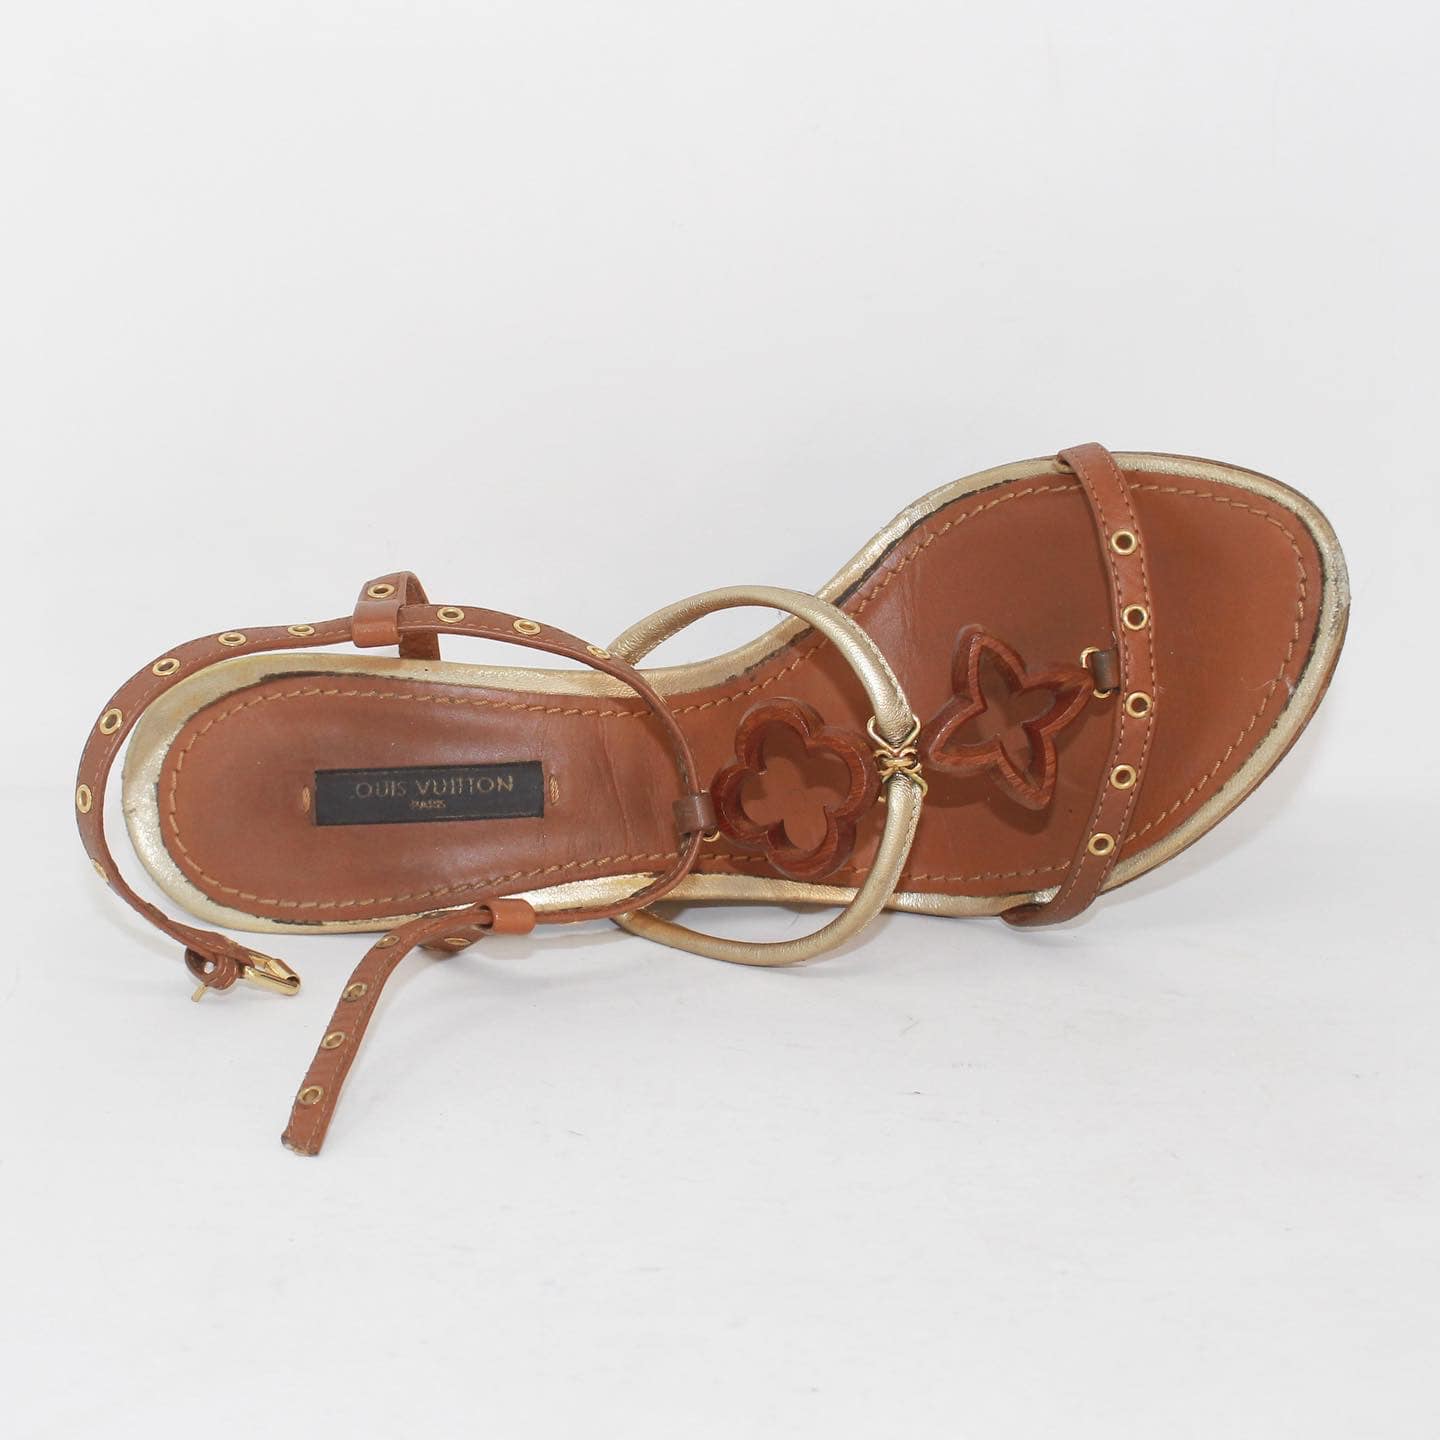 LOUIS VUITTON Vintage Monogram Long Boots # 36.5 US 6.5 Brown